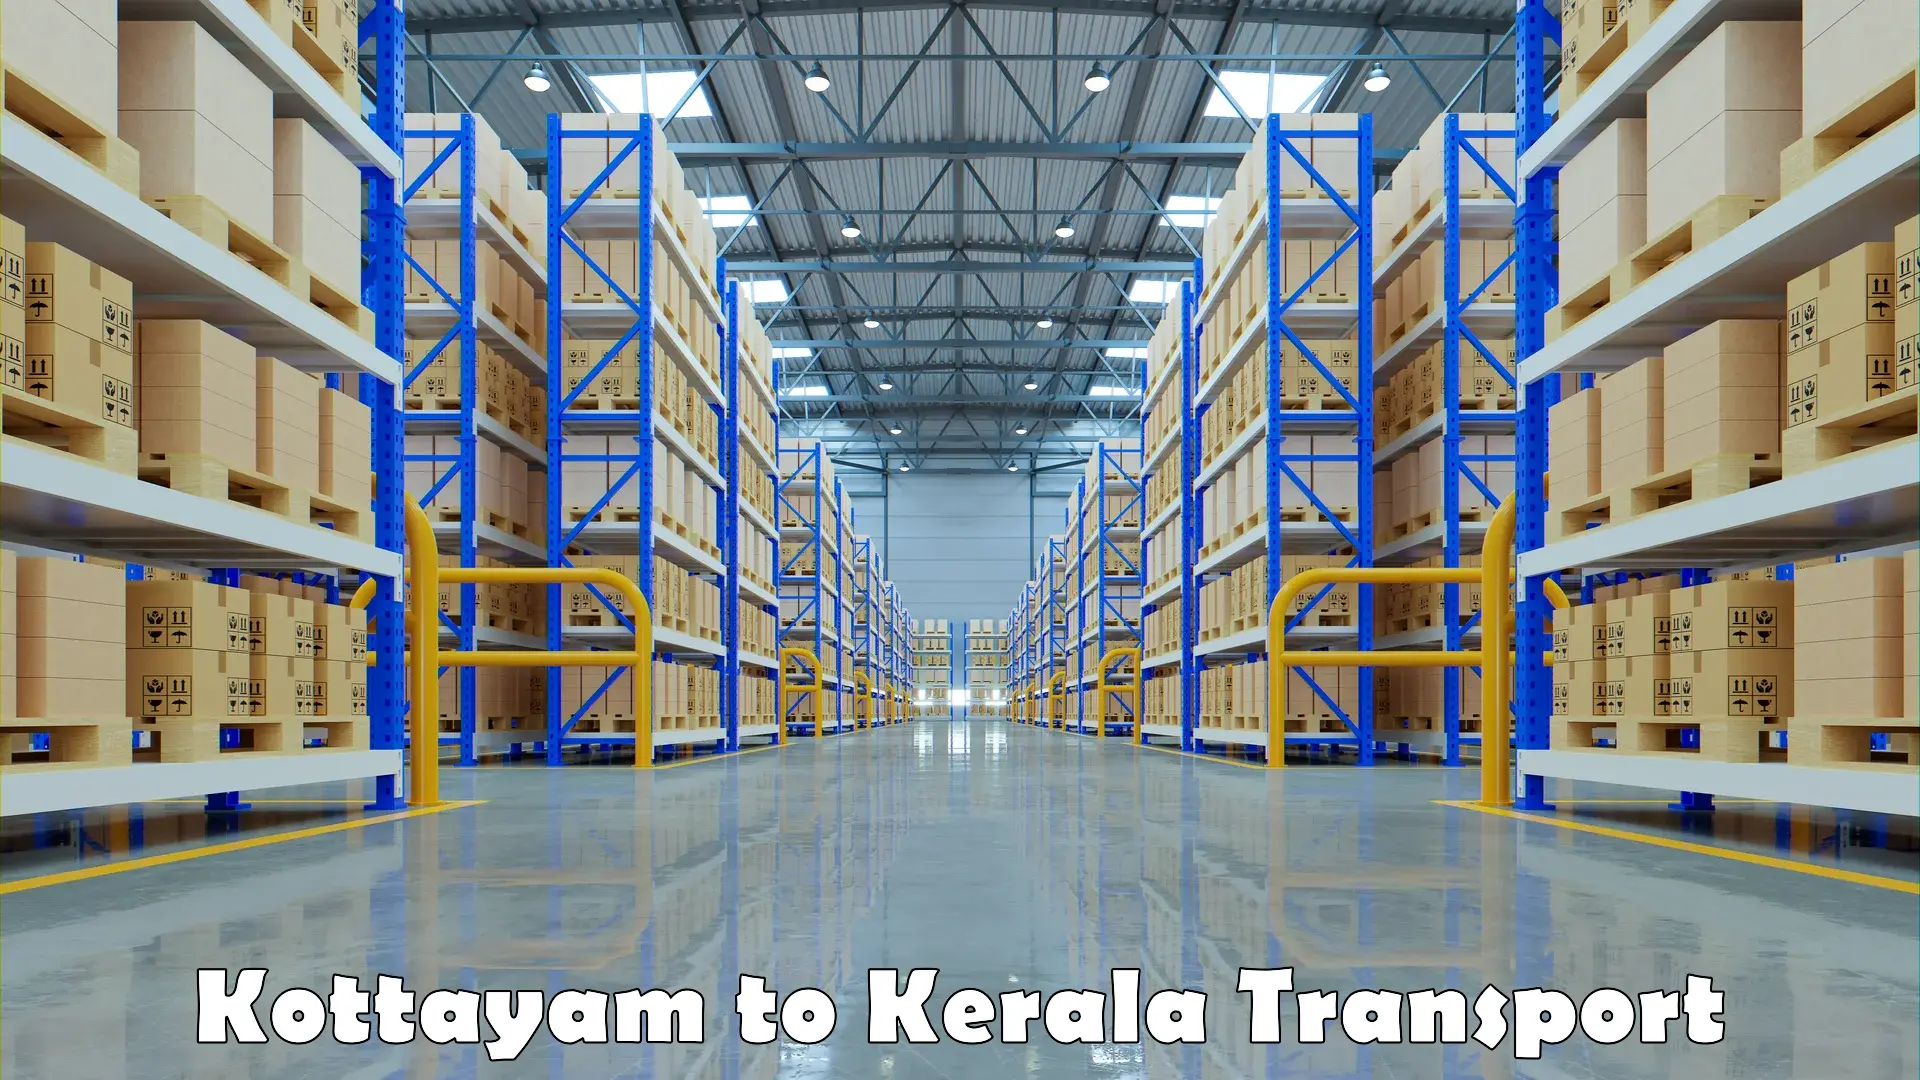 Truck transport companies in India Kottayam to Malappuram